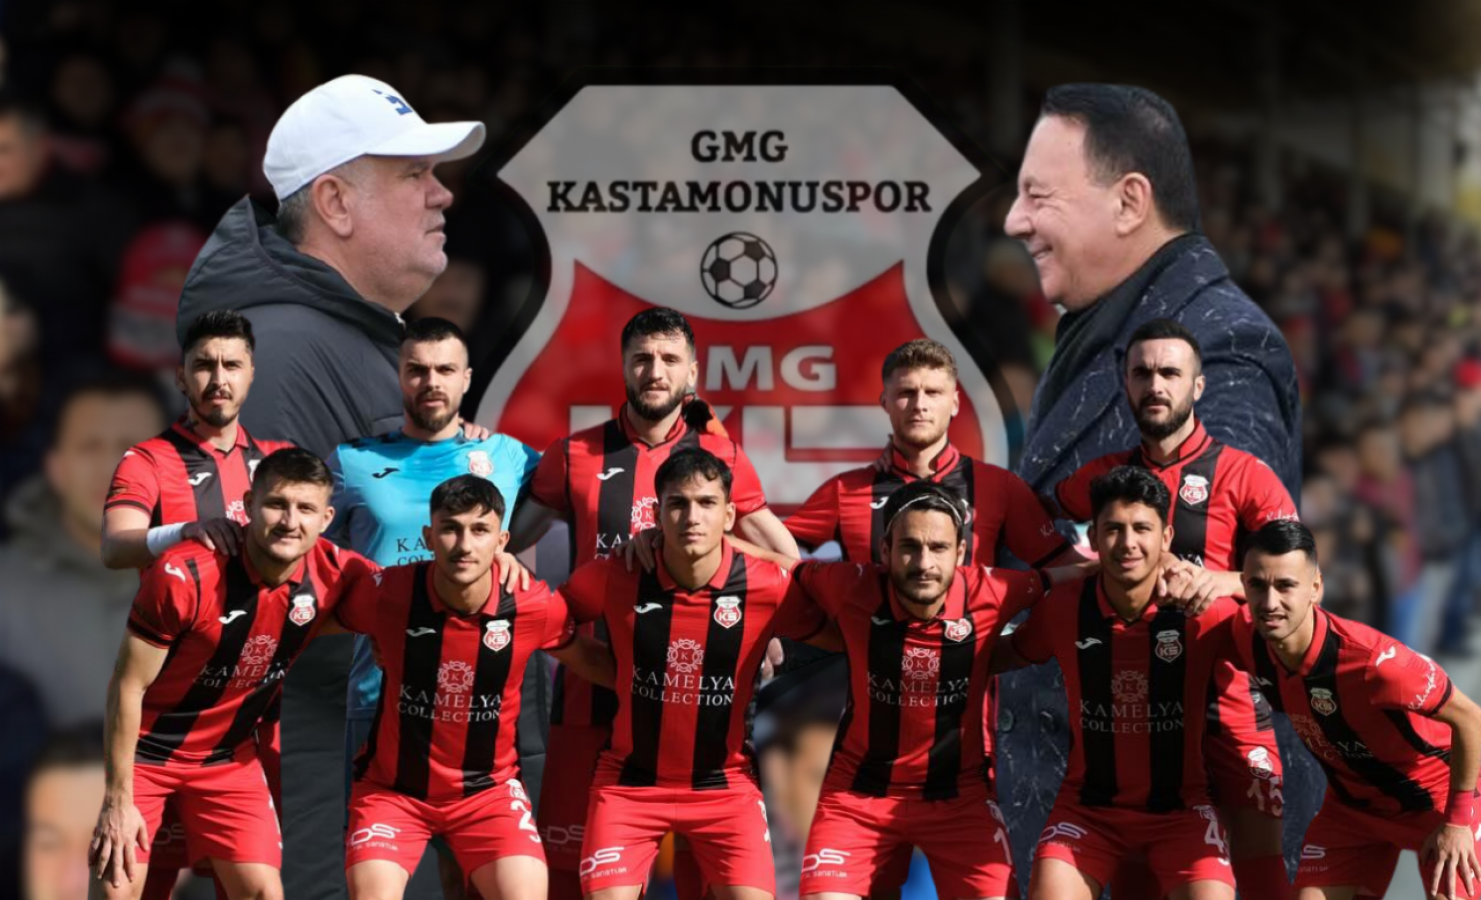 Lider GMG Kastamonuspor'dan taraftara çağrı!;